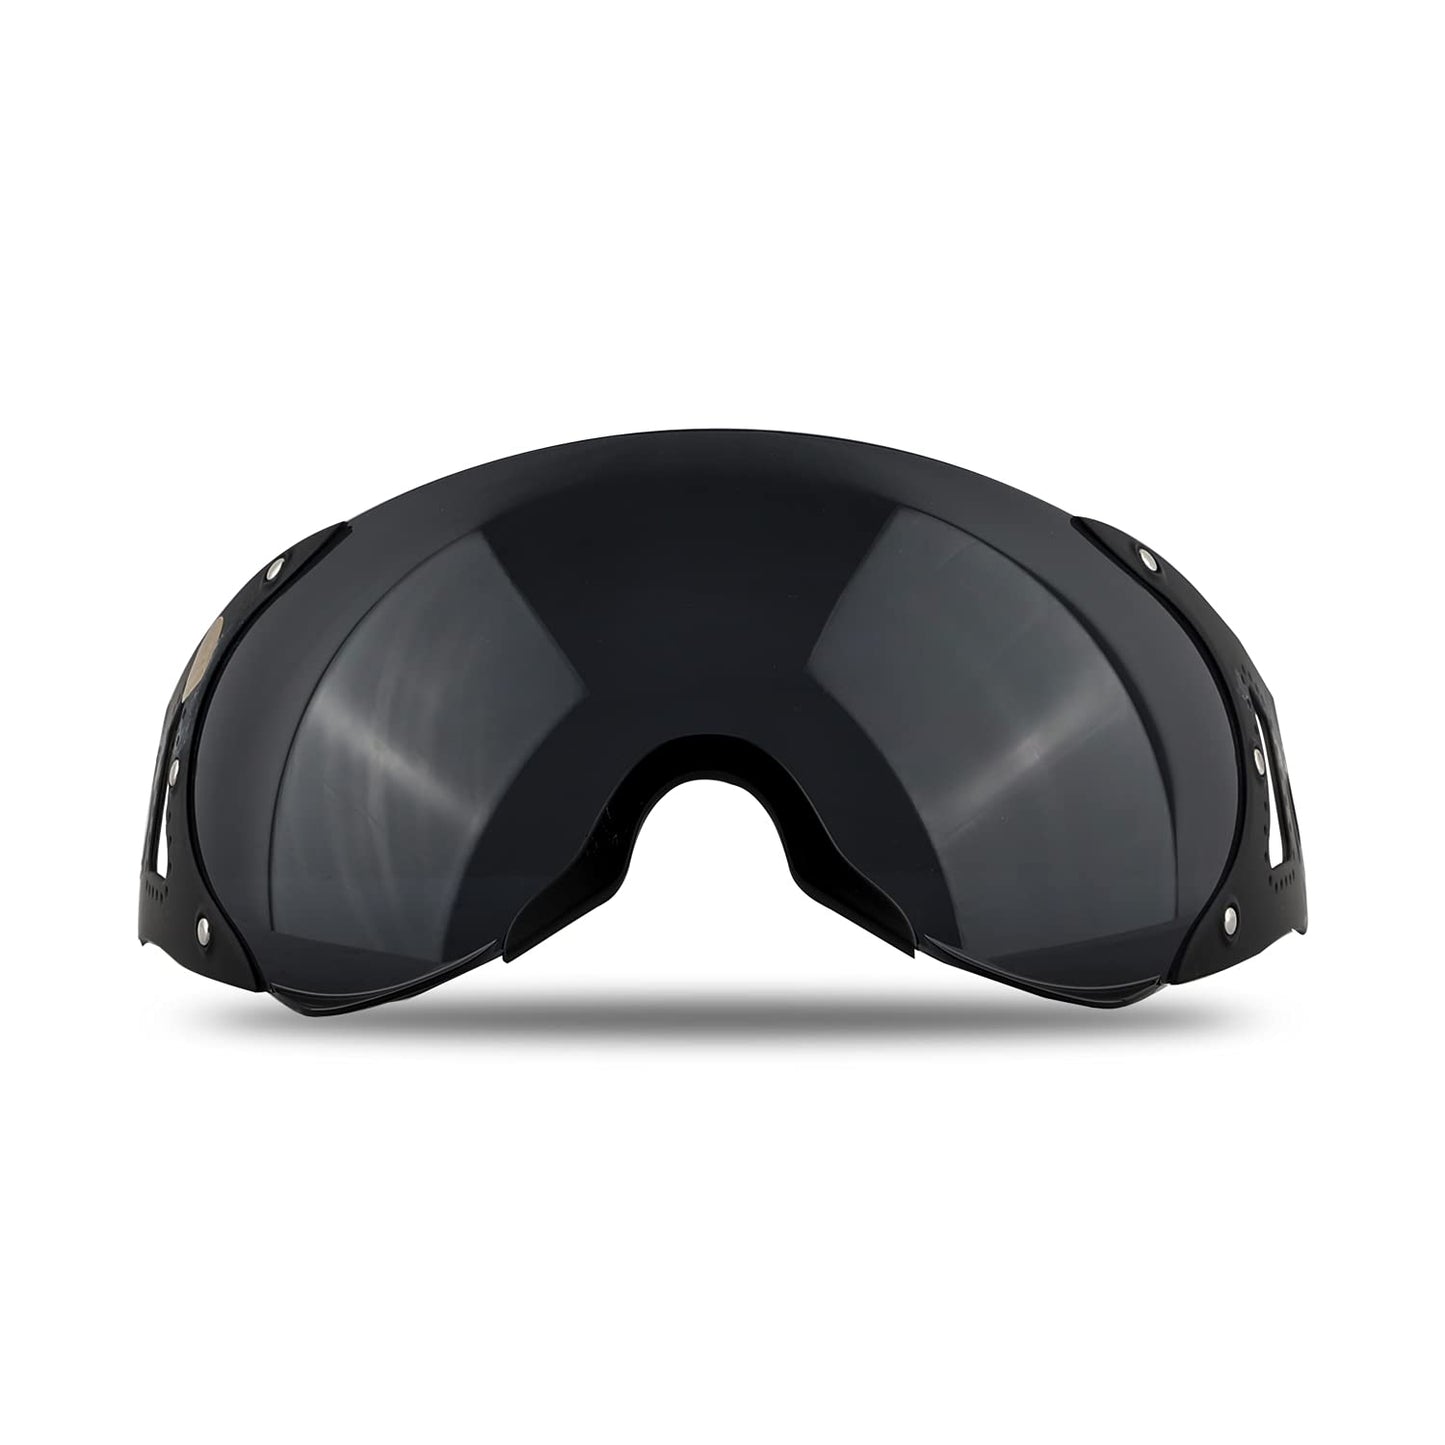 Steelbird SB-27 Helmet Visor Compatible for All SB-27 Model Helmets (Smoke Visor)